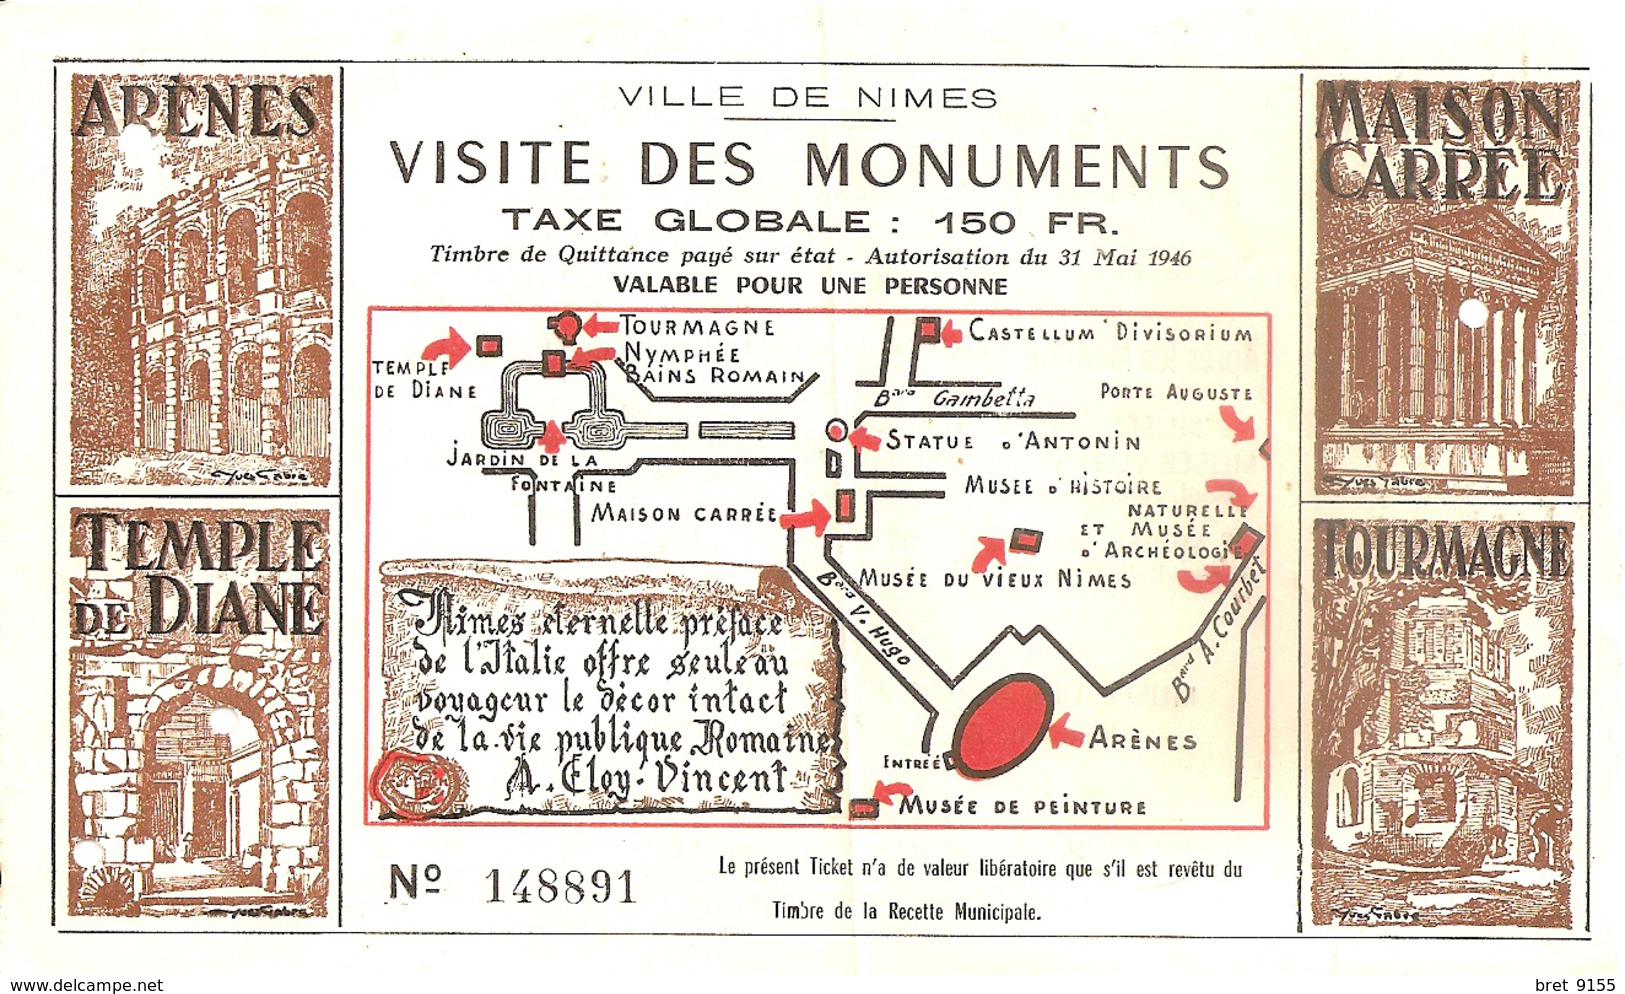 30 NIMES TICKET VISITE DES MONUMENTS 150 FR VALABLE POUR UNE PERSONNE N° 148891 AUTORISATION 1946 - Tickets - Vouchers